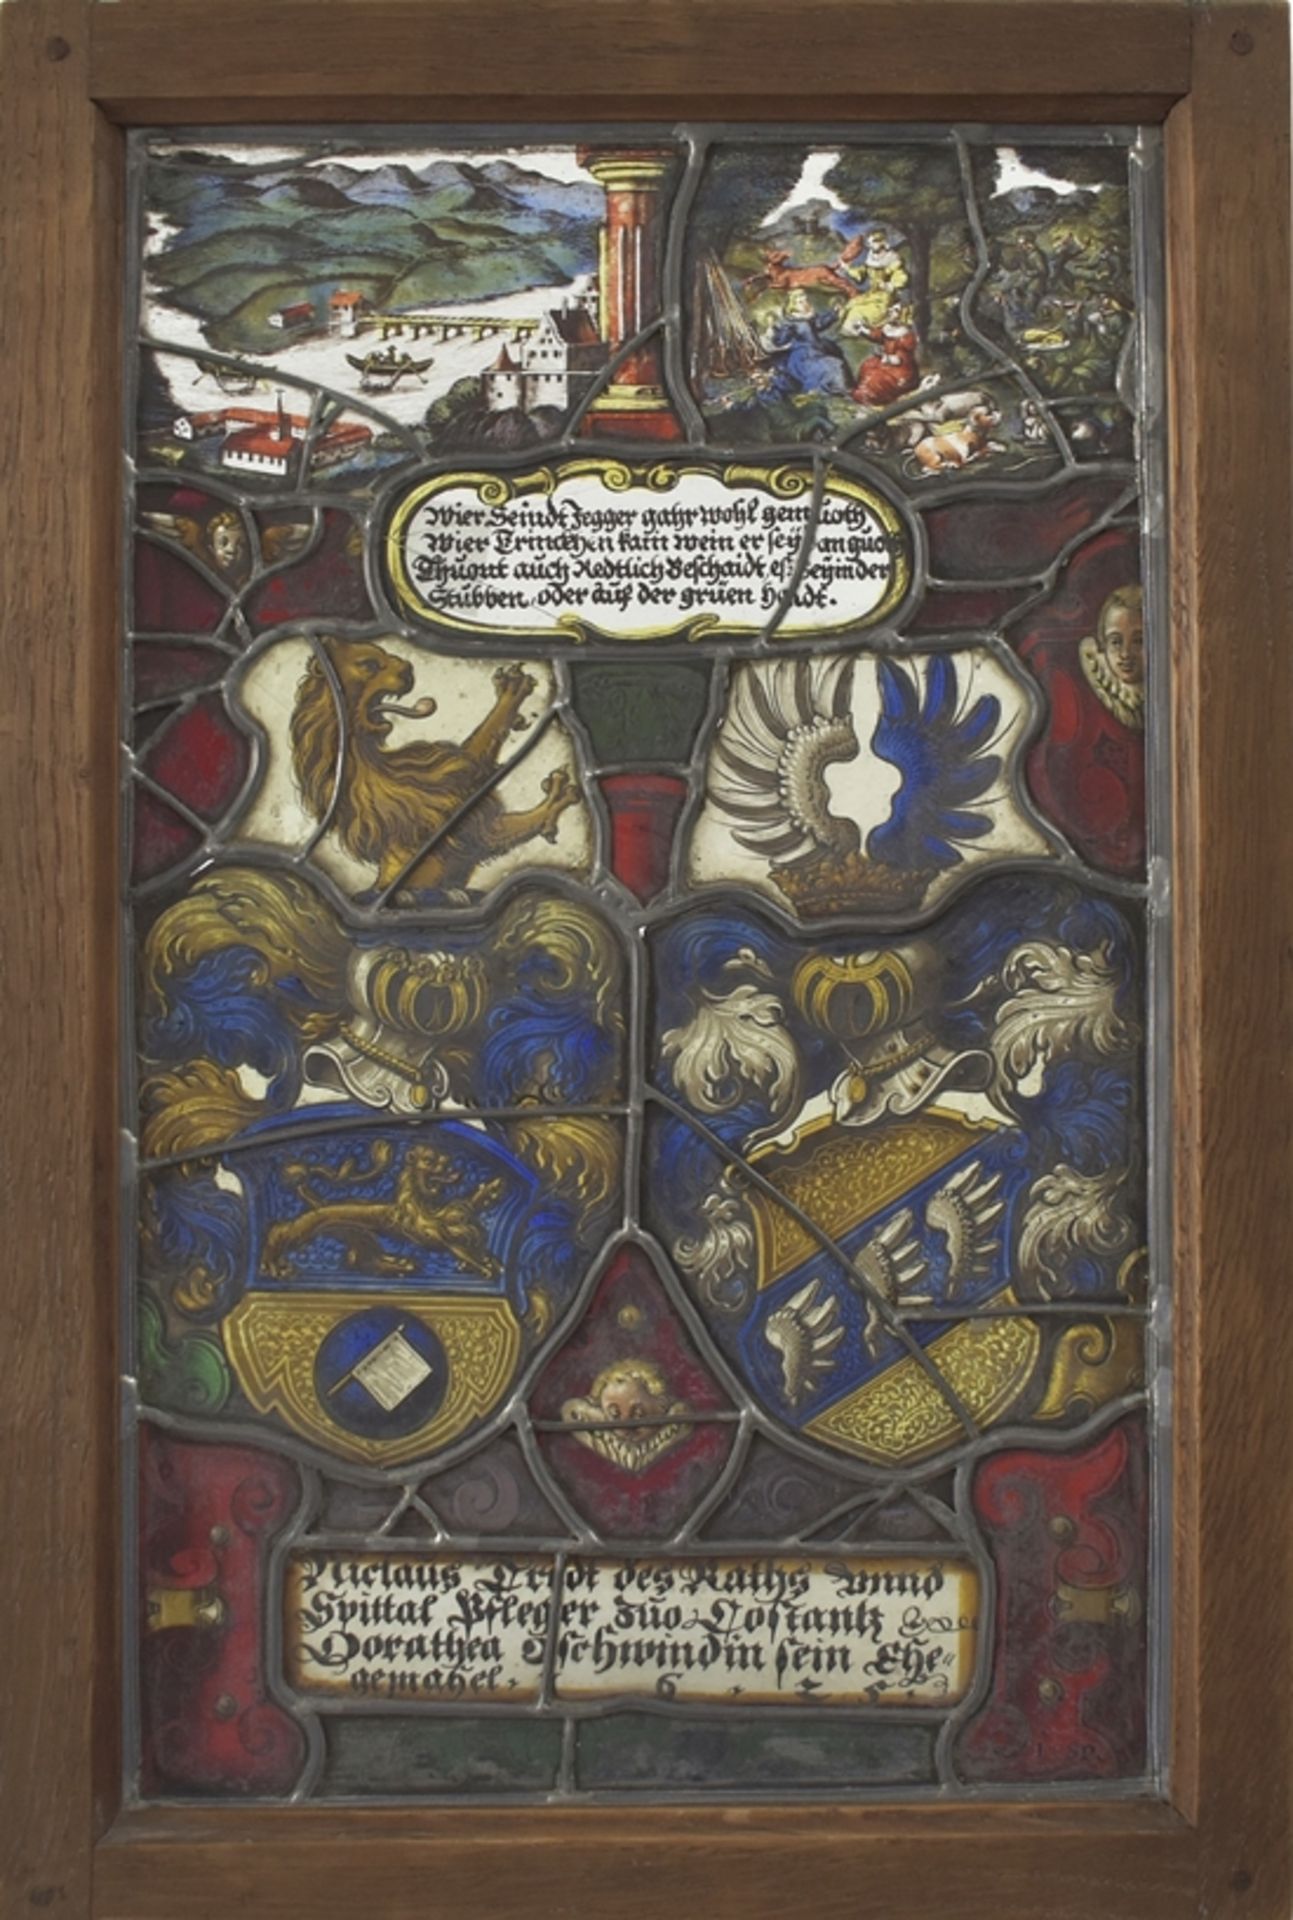 Museales Konstanzer Glasgemälde 1625. Wappen des 'Niclaus Tritt des Raths und Spittal Pfleger zu Co